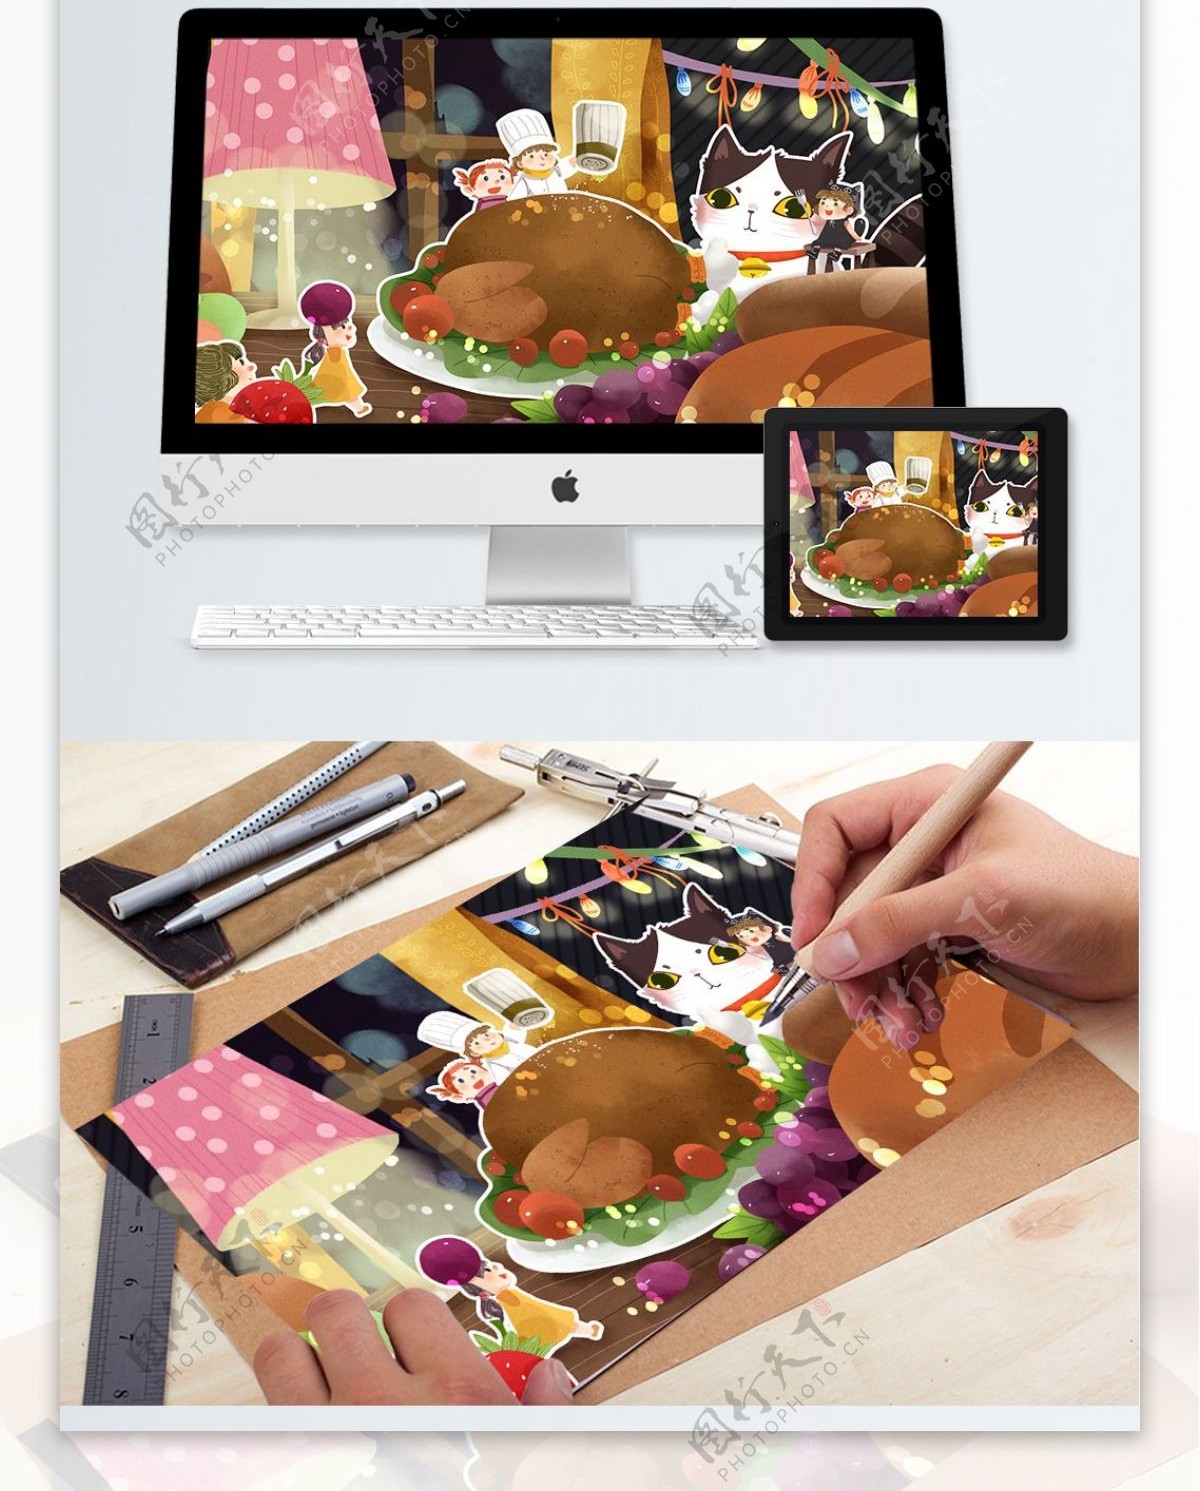 感恩节之小精灵和猫咪料理火鸡大餐